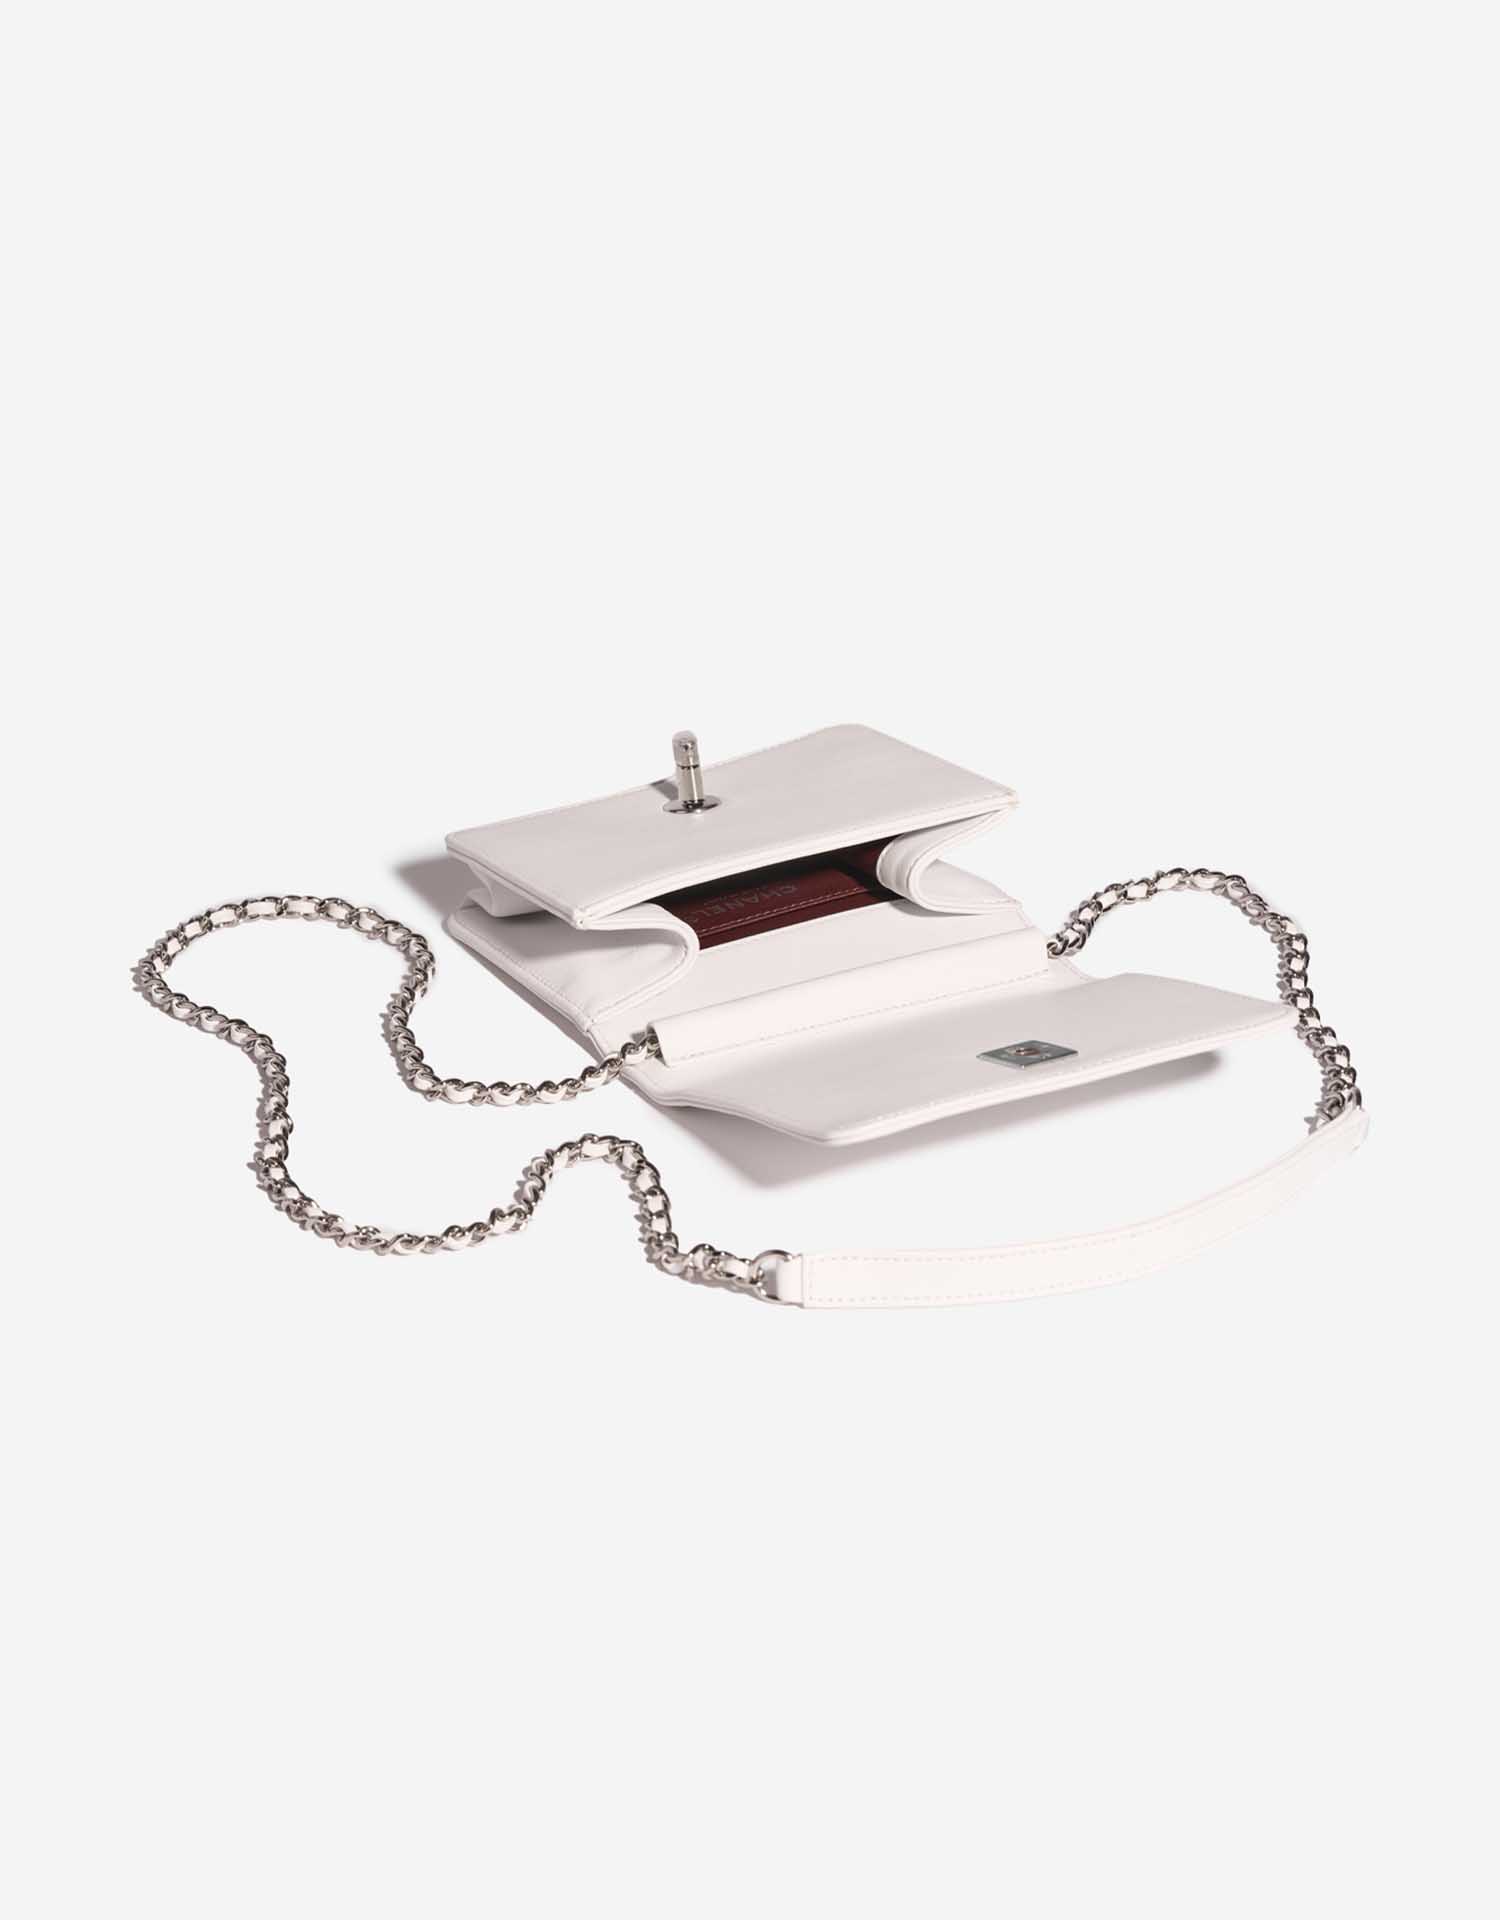 Chanel Timeless MiniFlap White Inside | Verkaufen Sie Ihre Designer-Tasche auf Saclab.com